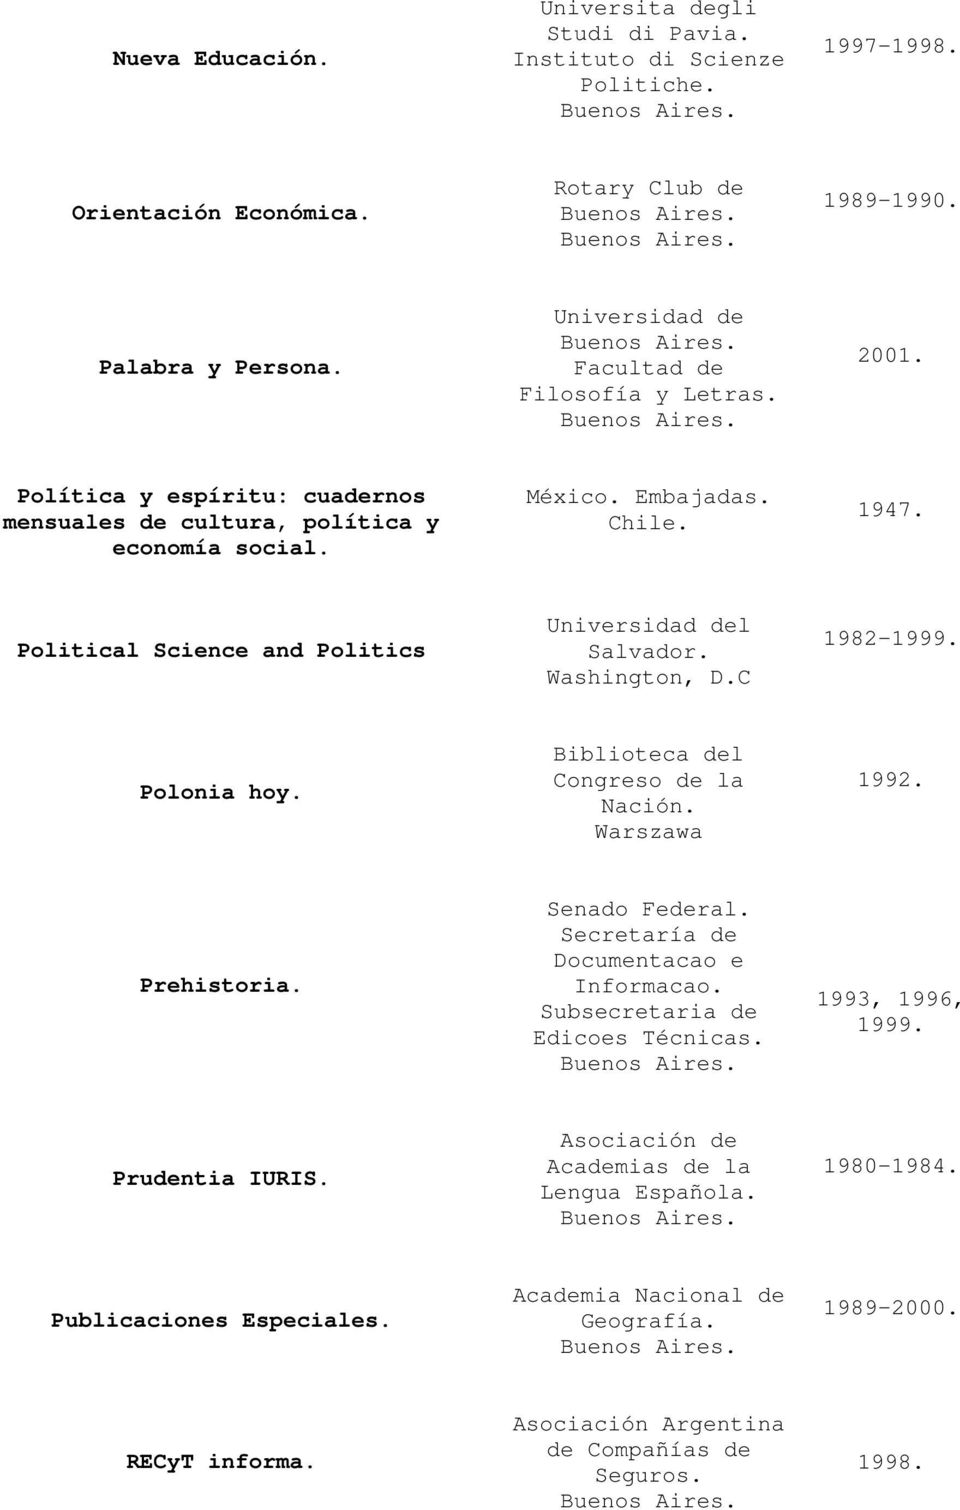 Political Science and Politics Universidad del Salvador. Washington, D.C 1982-1999. Polonia hoy. Biblioteca del Congreso de la Nación. Warszawa 1992. Prehistoria. Senado Federal.